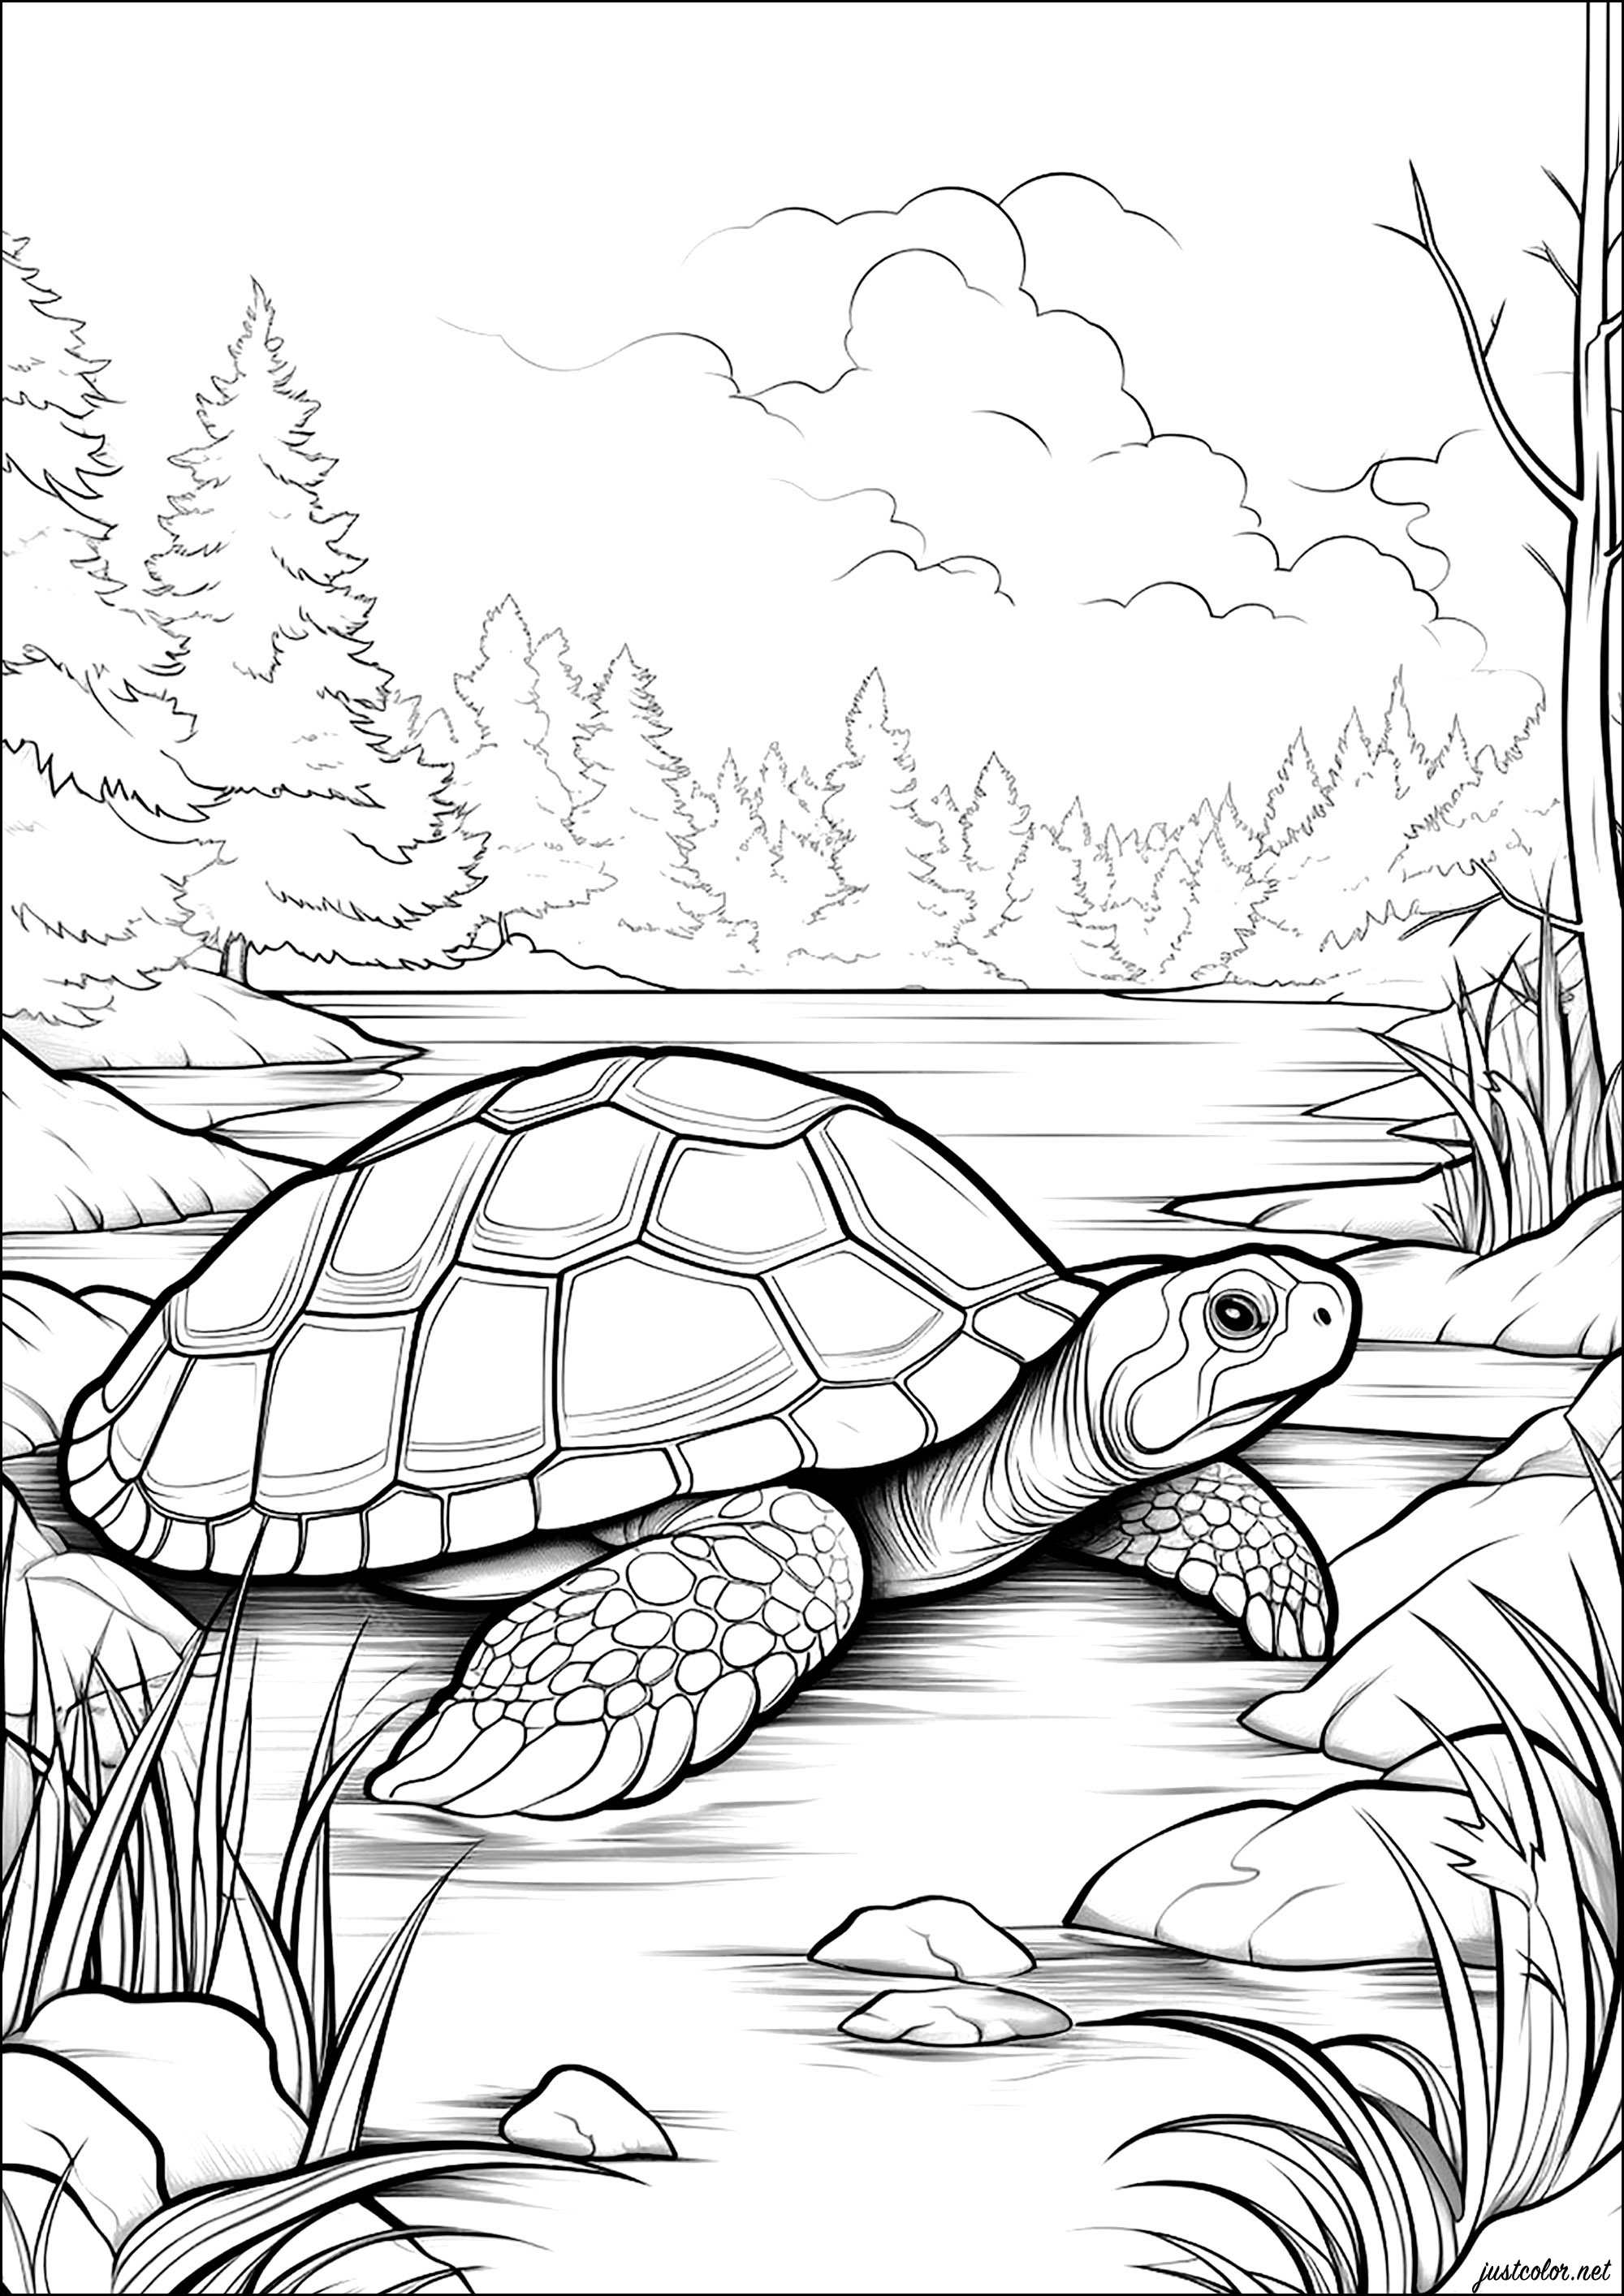 Schildkröte bei einem Spaziergang, mit herrlichem Hintergrund